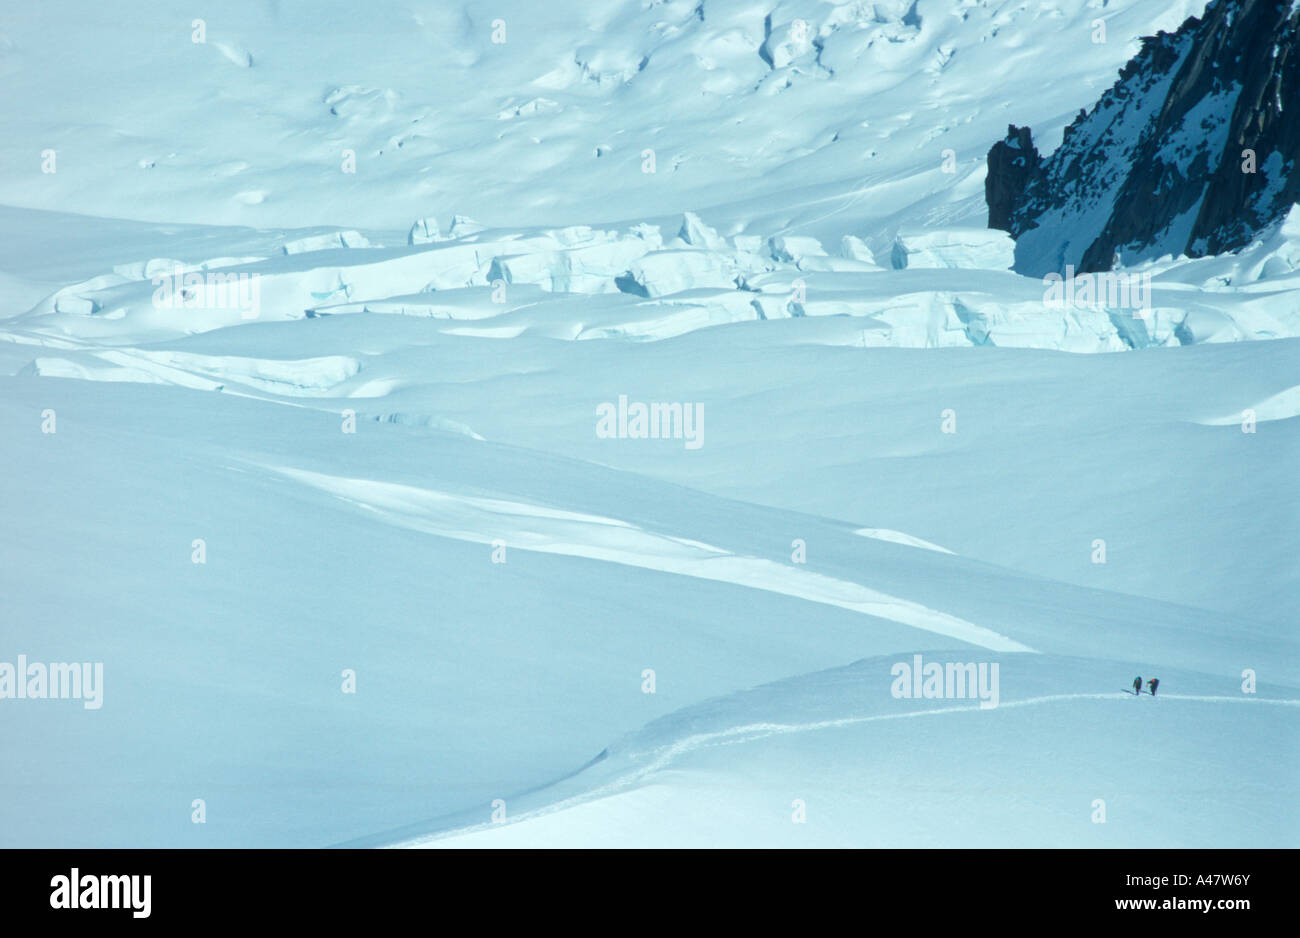 Eine Gruppe von Bergsteigern Emissionshandelsystem ihrer Umgebung, wie sie den Geant Gletscher hoch in den französischen Alpen überqueren Stockfoto